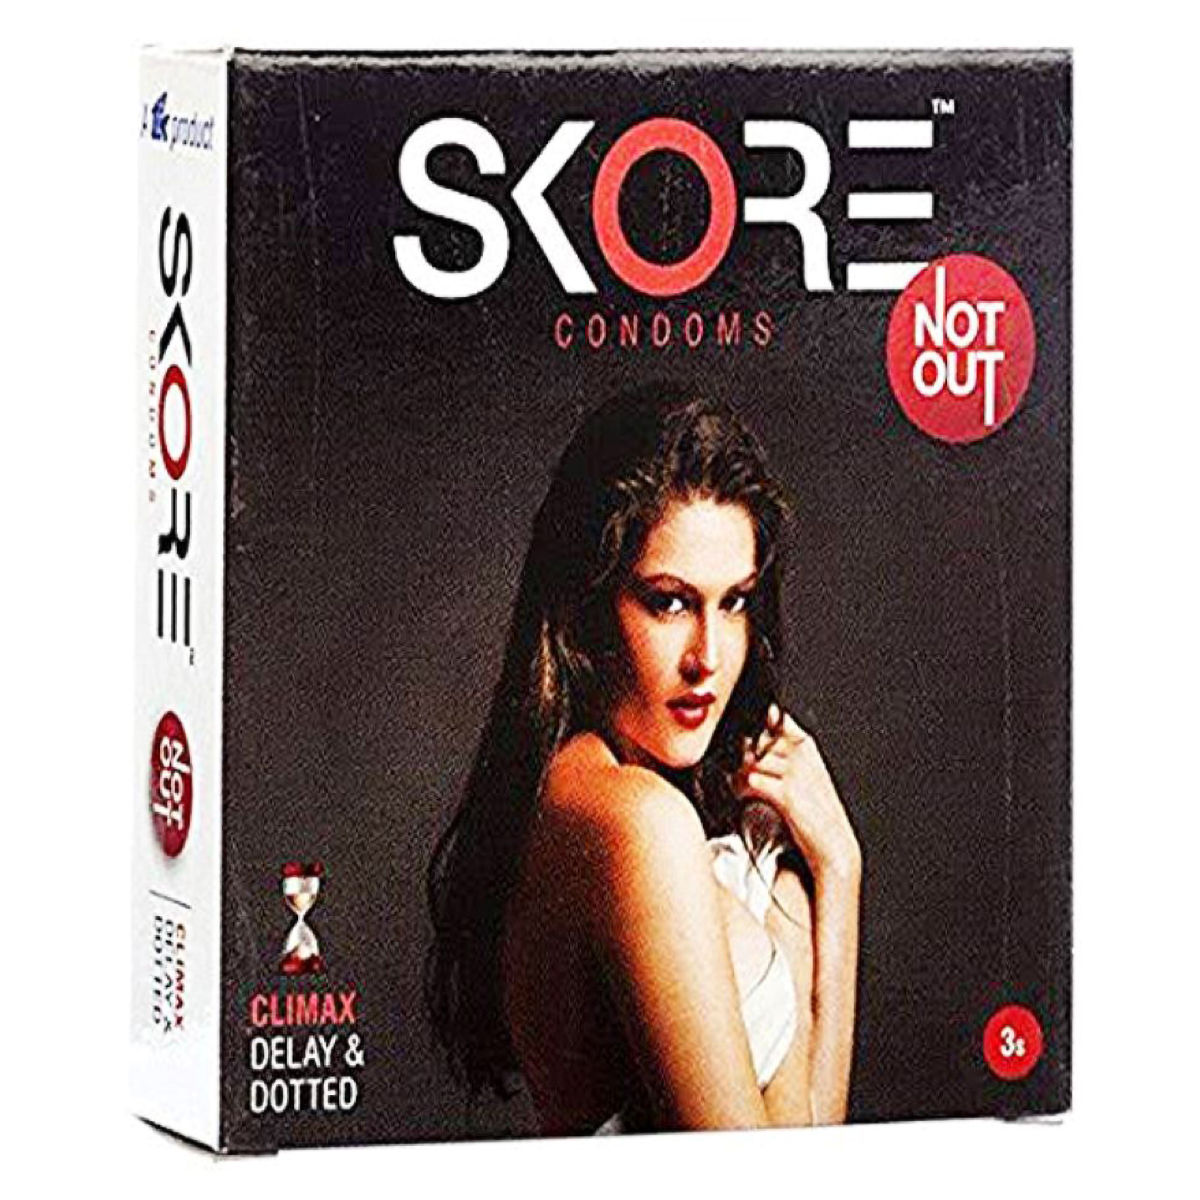 Buy Skore NotOut Condoms, 3 Count Online